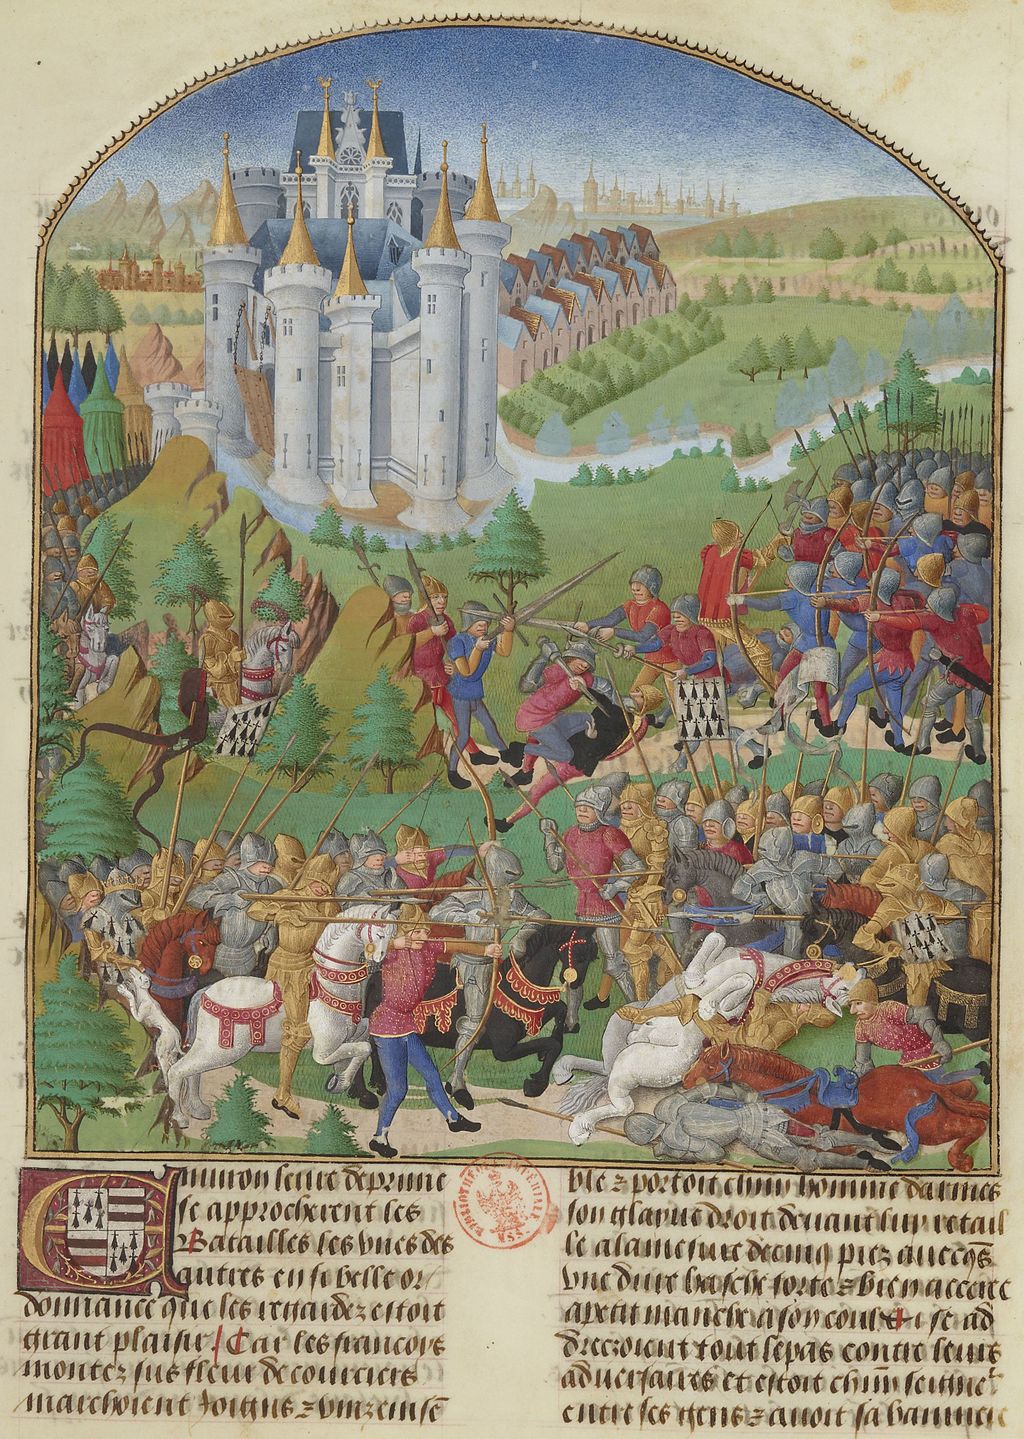 LE BAUD P. XVe s. La bataille d’Auray dans Compillation des croniques et ystores des Bretons, BNF, fr. 8266, f. 262.